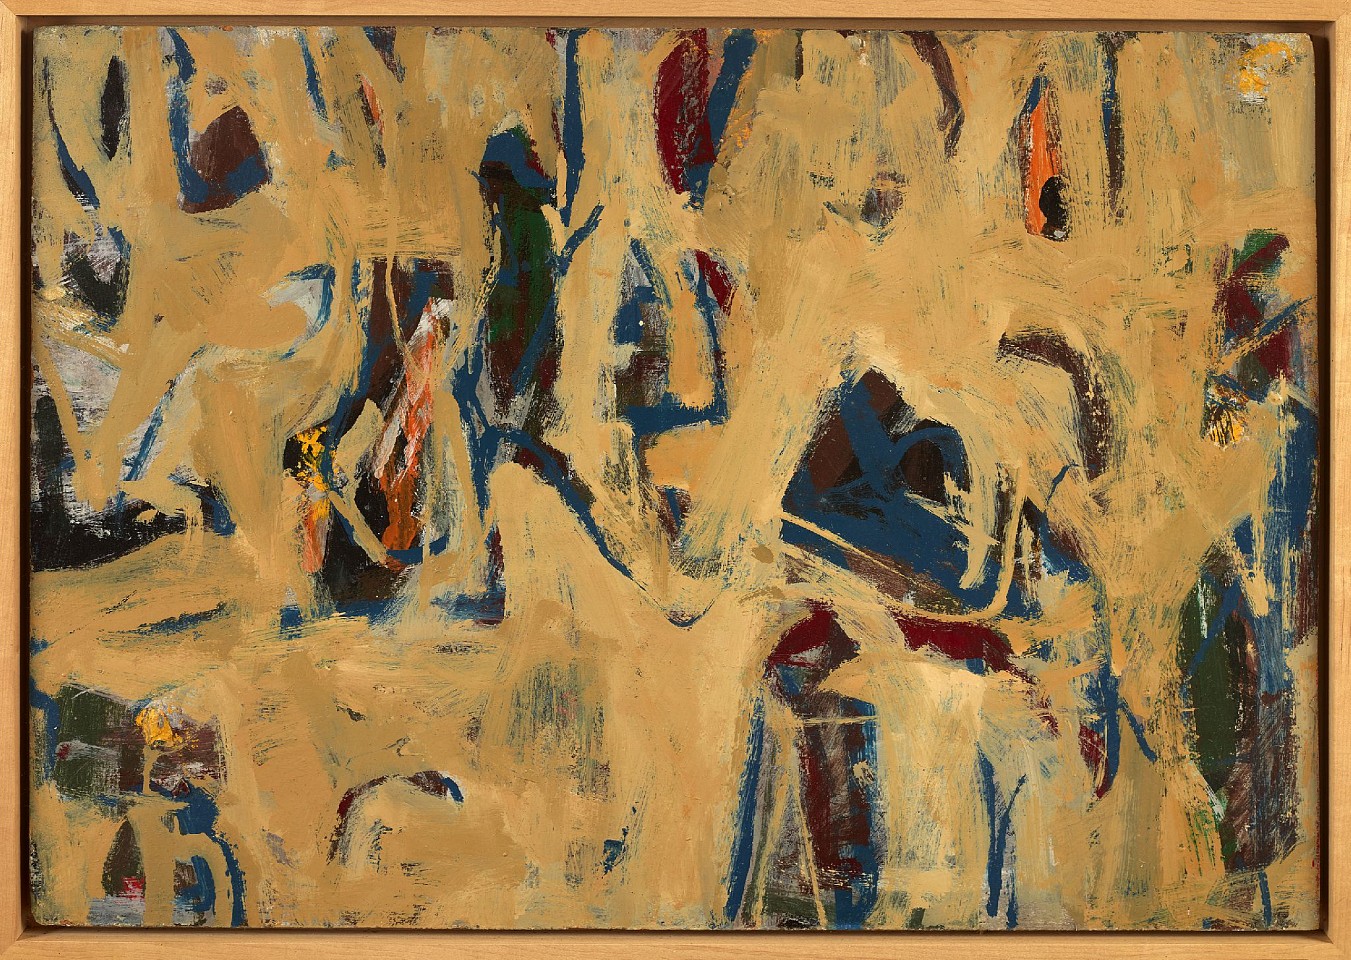 John Opper, Untitled (#16), 1954
Oil on board, 24 x 33 in. (61 x 83.8 cm)
OPP-00029